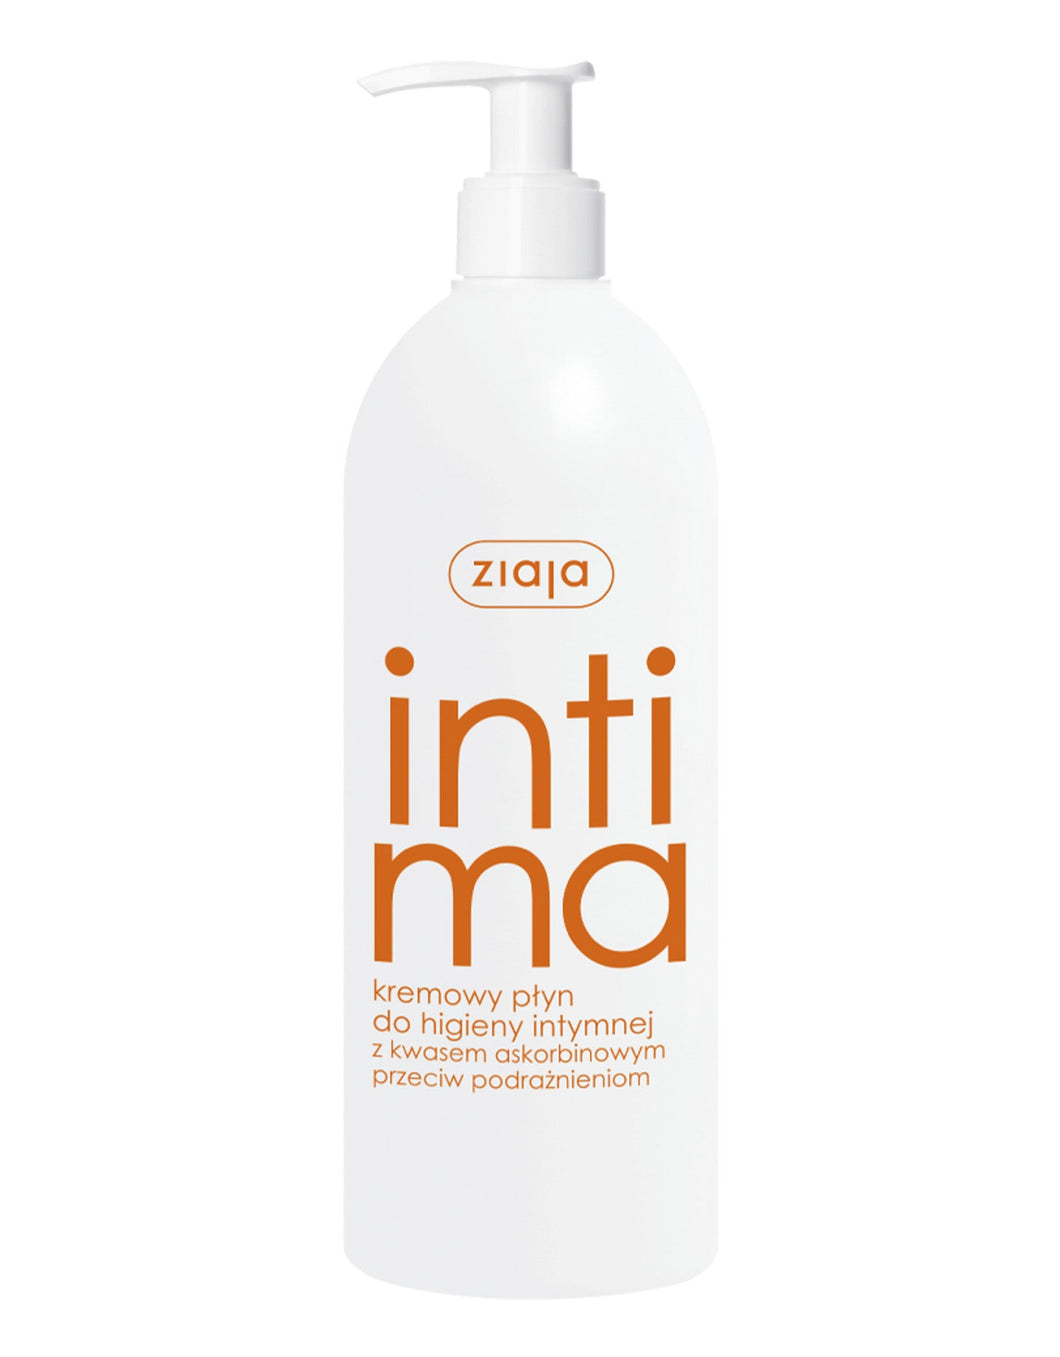 Ziaja Intima Creamy Hygiene Lotion with Ascorbic Acid 500ml